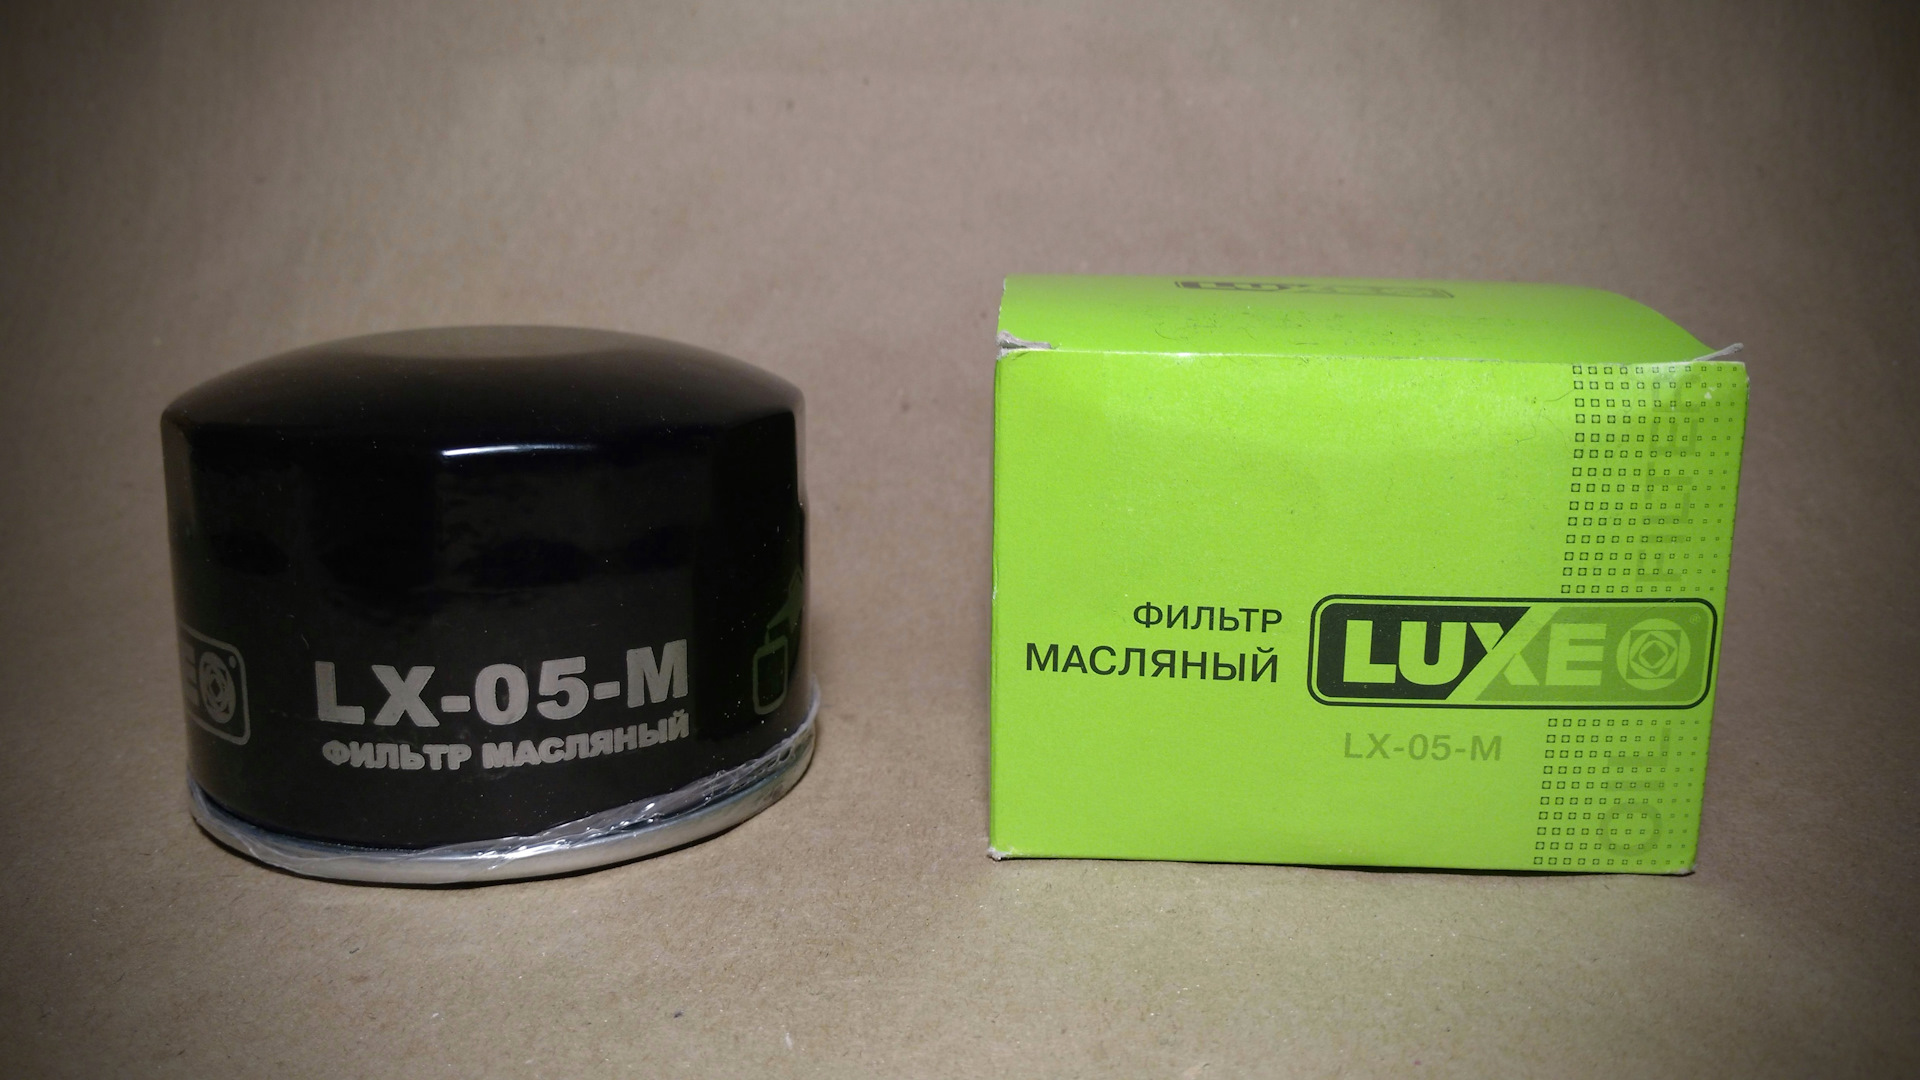 Рейтинг производителей фильтров для автомобилей. Масляный фильтр Luxe LX-05-М. Luxe фильтр масляный ВАЗ 05 (LX-05-M). Фильтр масляный LX-05m.